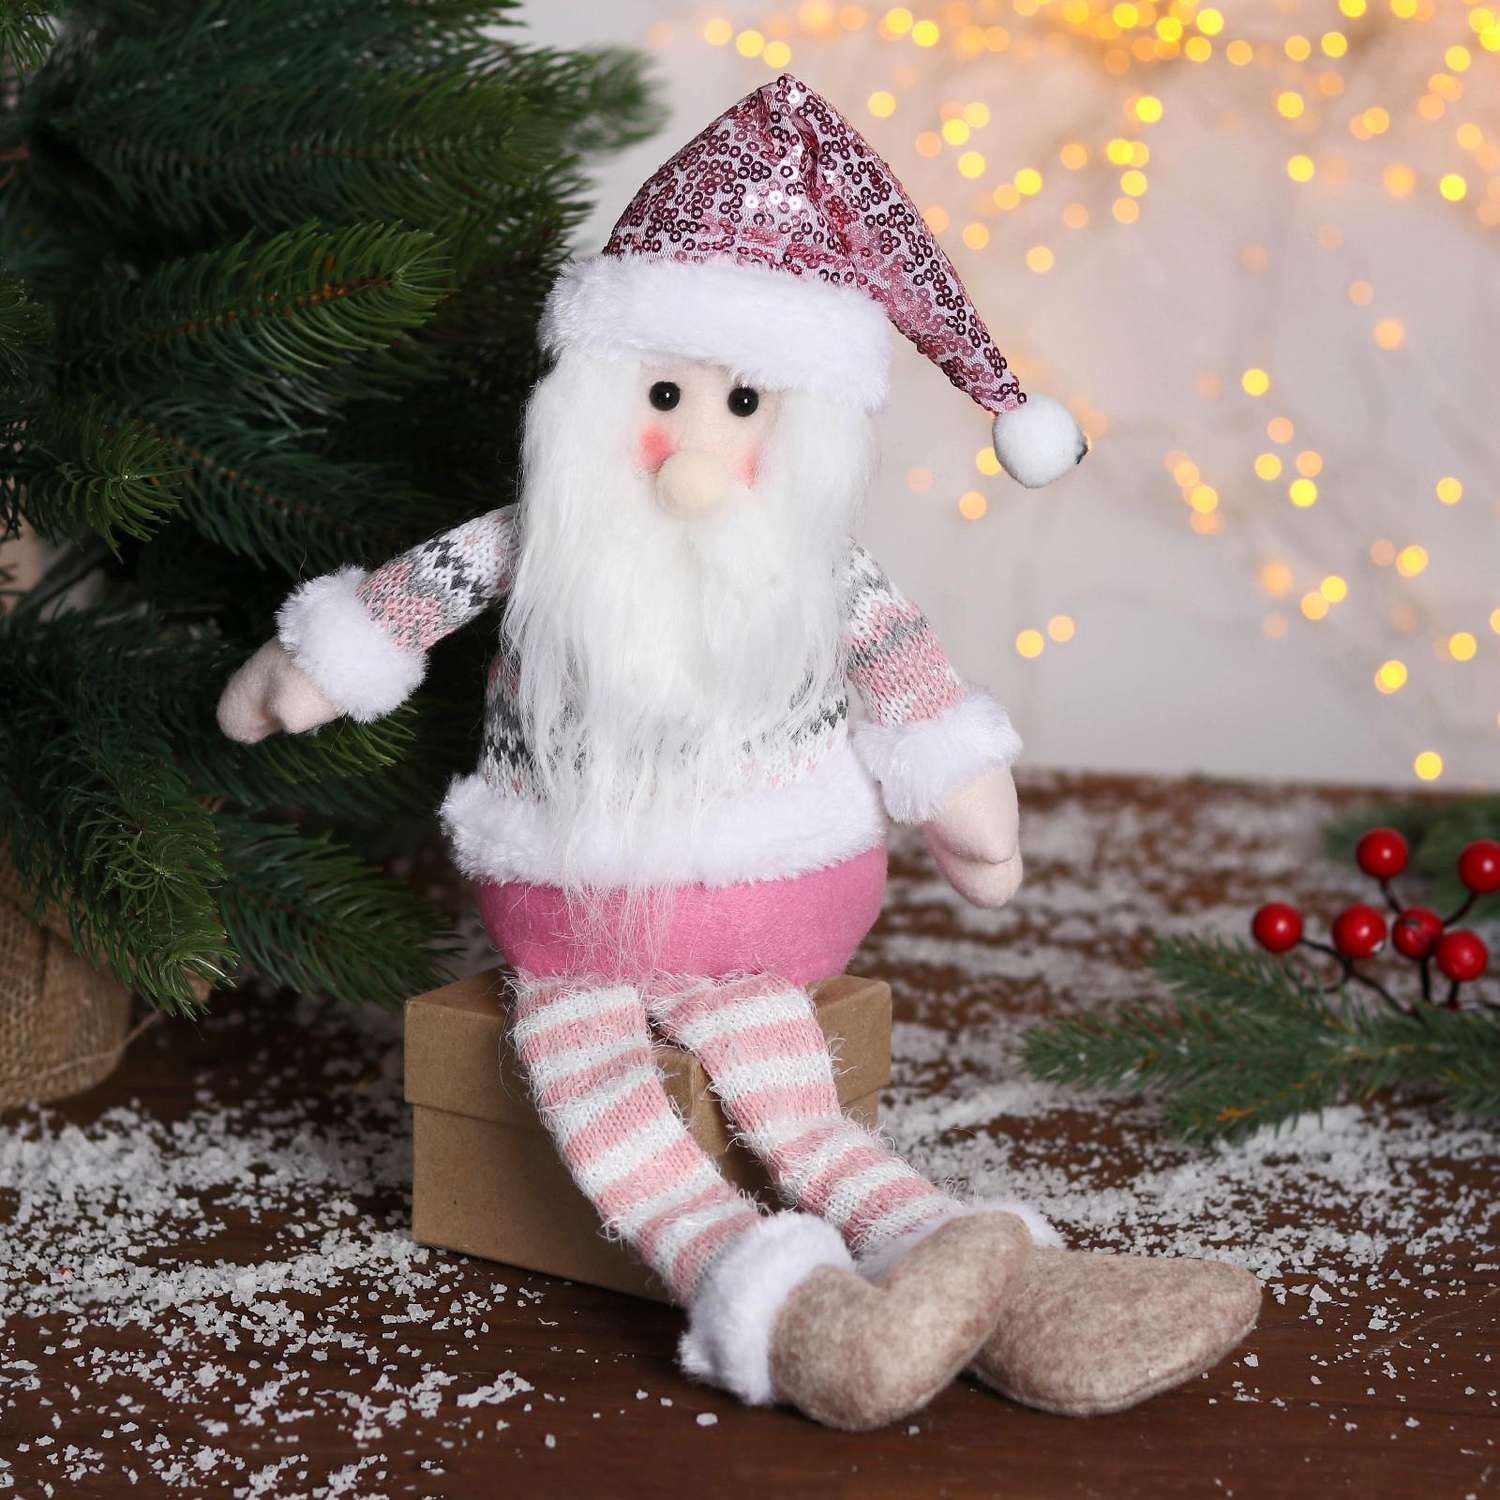 Мягкая игрушка Зимнее волшебство «Дед Мороз в розой шапочке-длинные ножки» 11х37см бело-розовый - фото 1